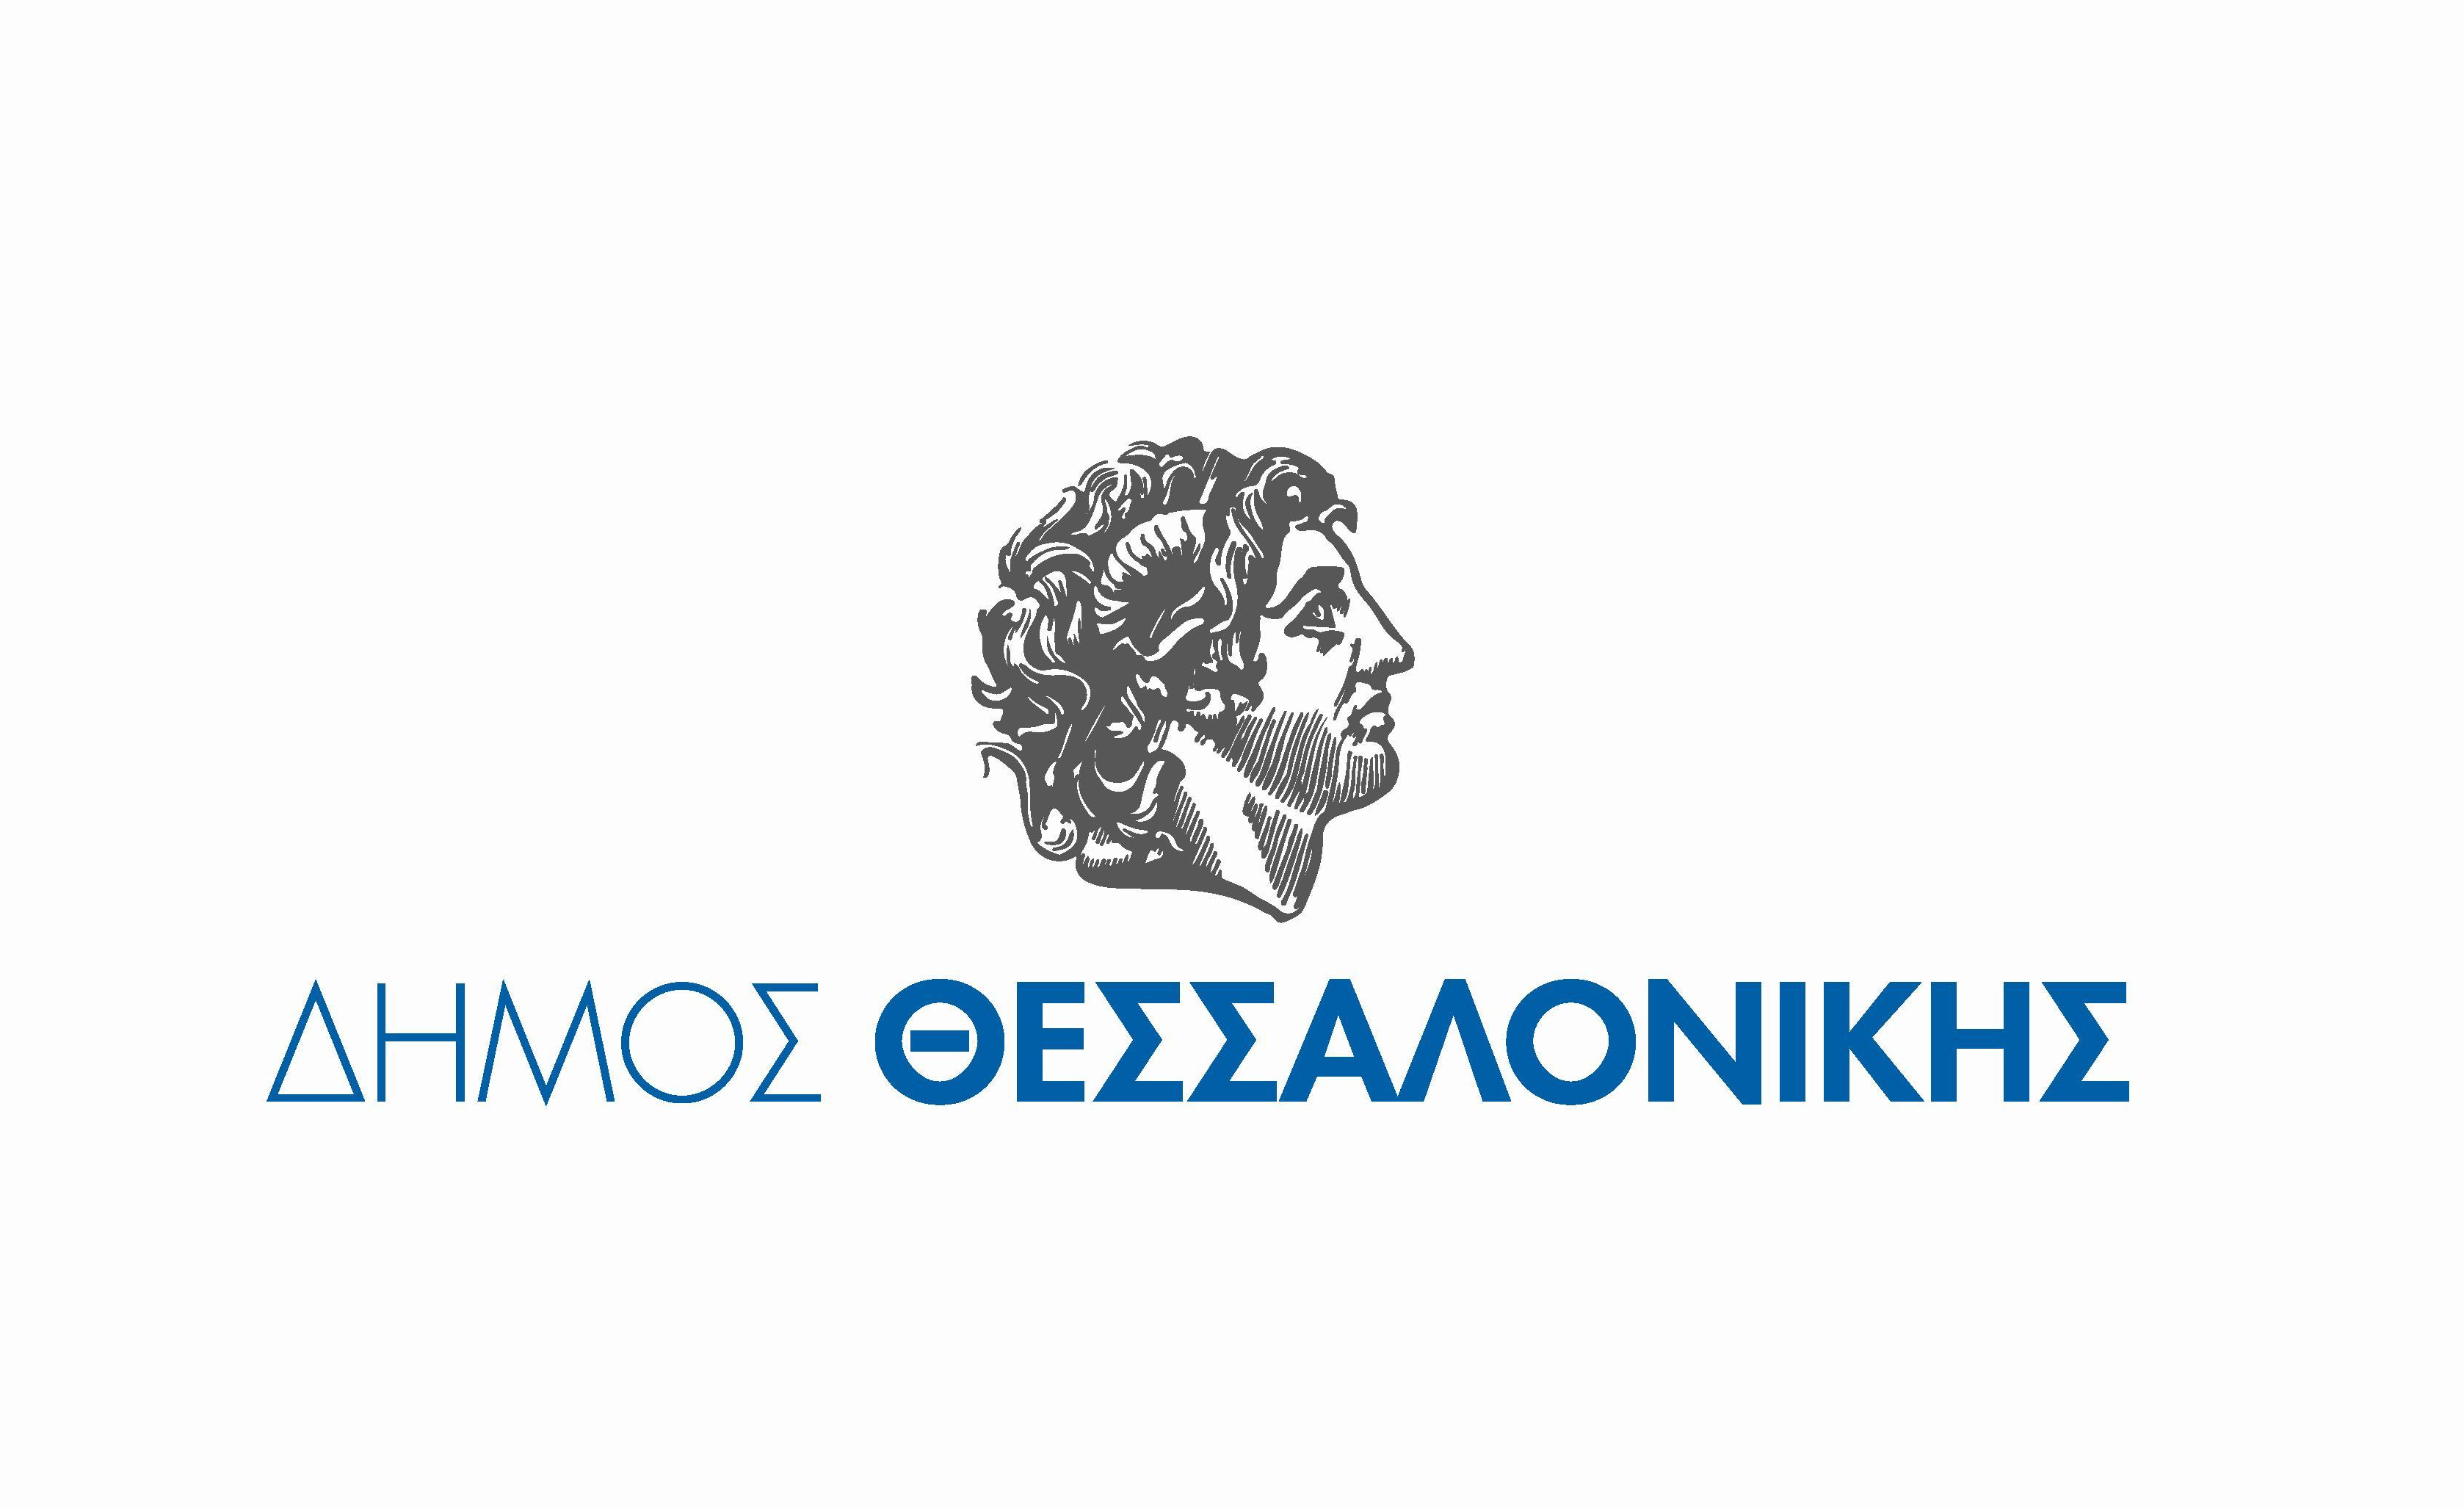 (Ελληνικά) Παραγωγή αναμνηστικών ειδών/δώρων – Δήμος Θεσσαλονίκης